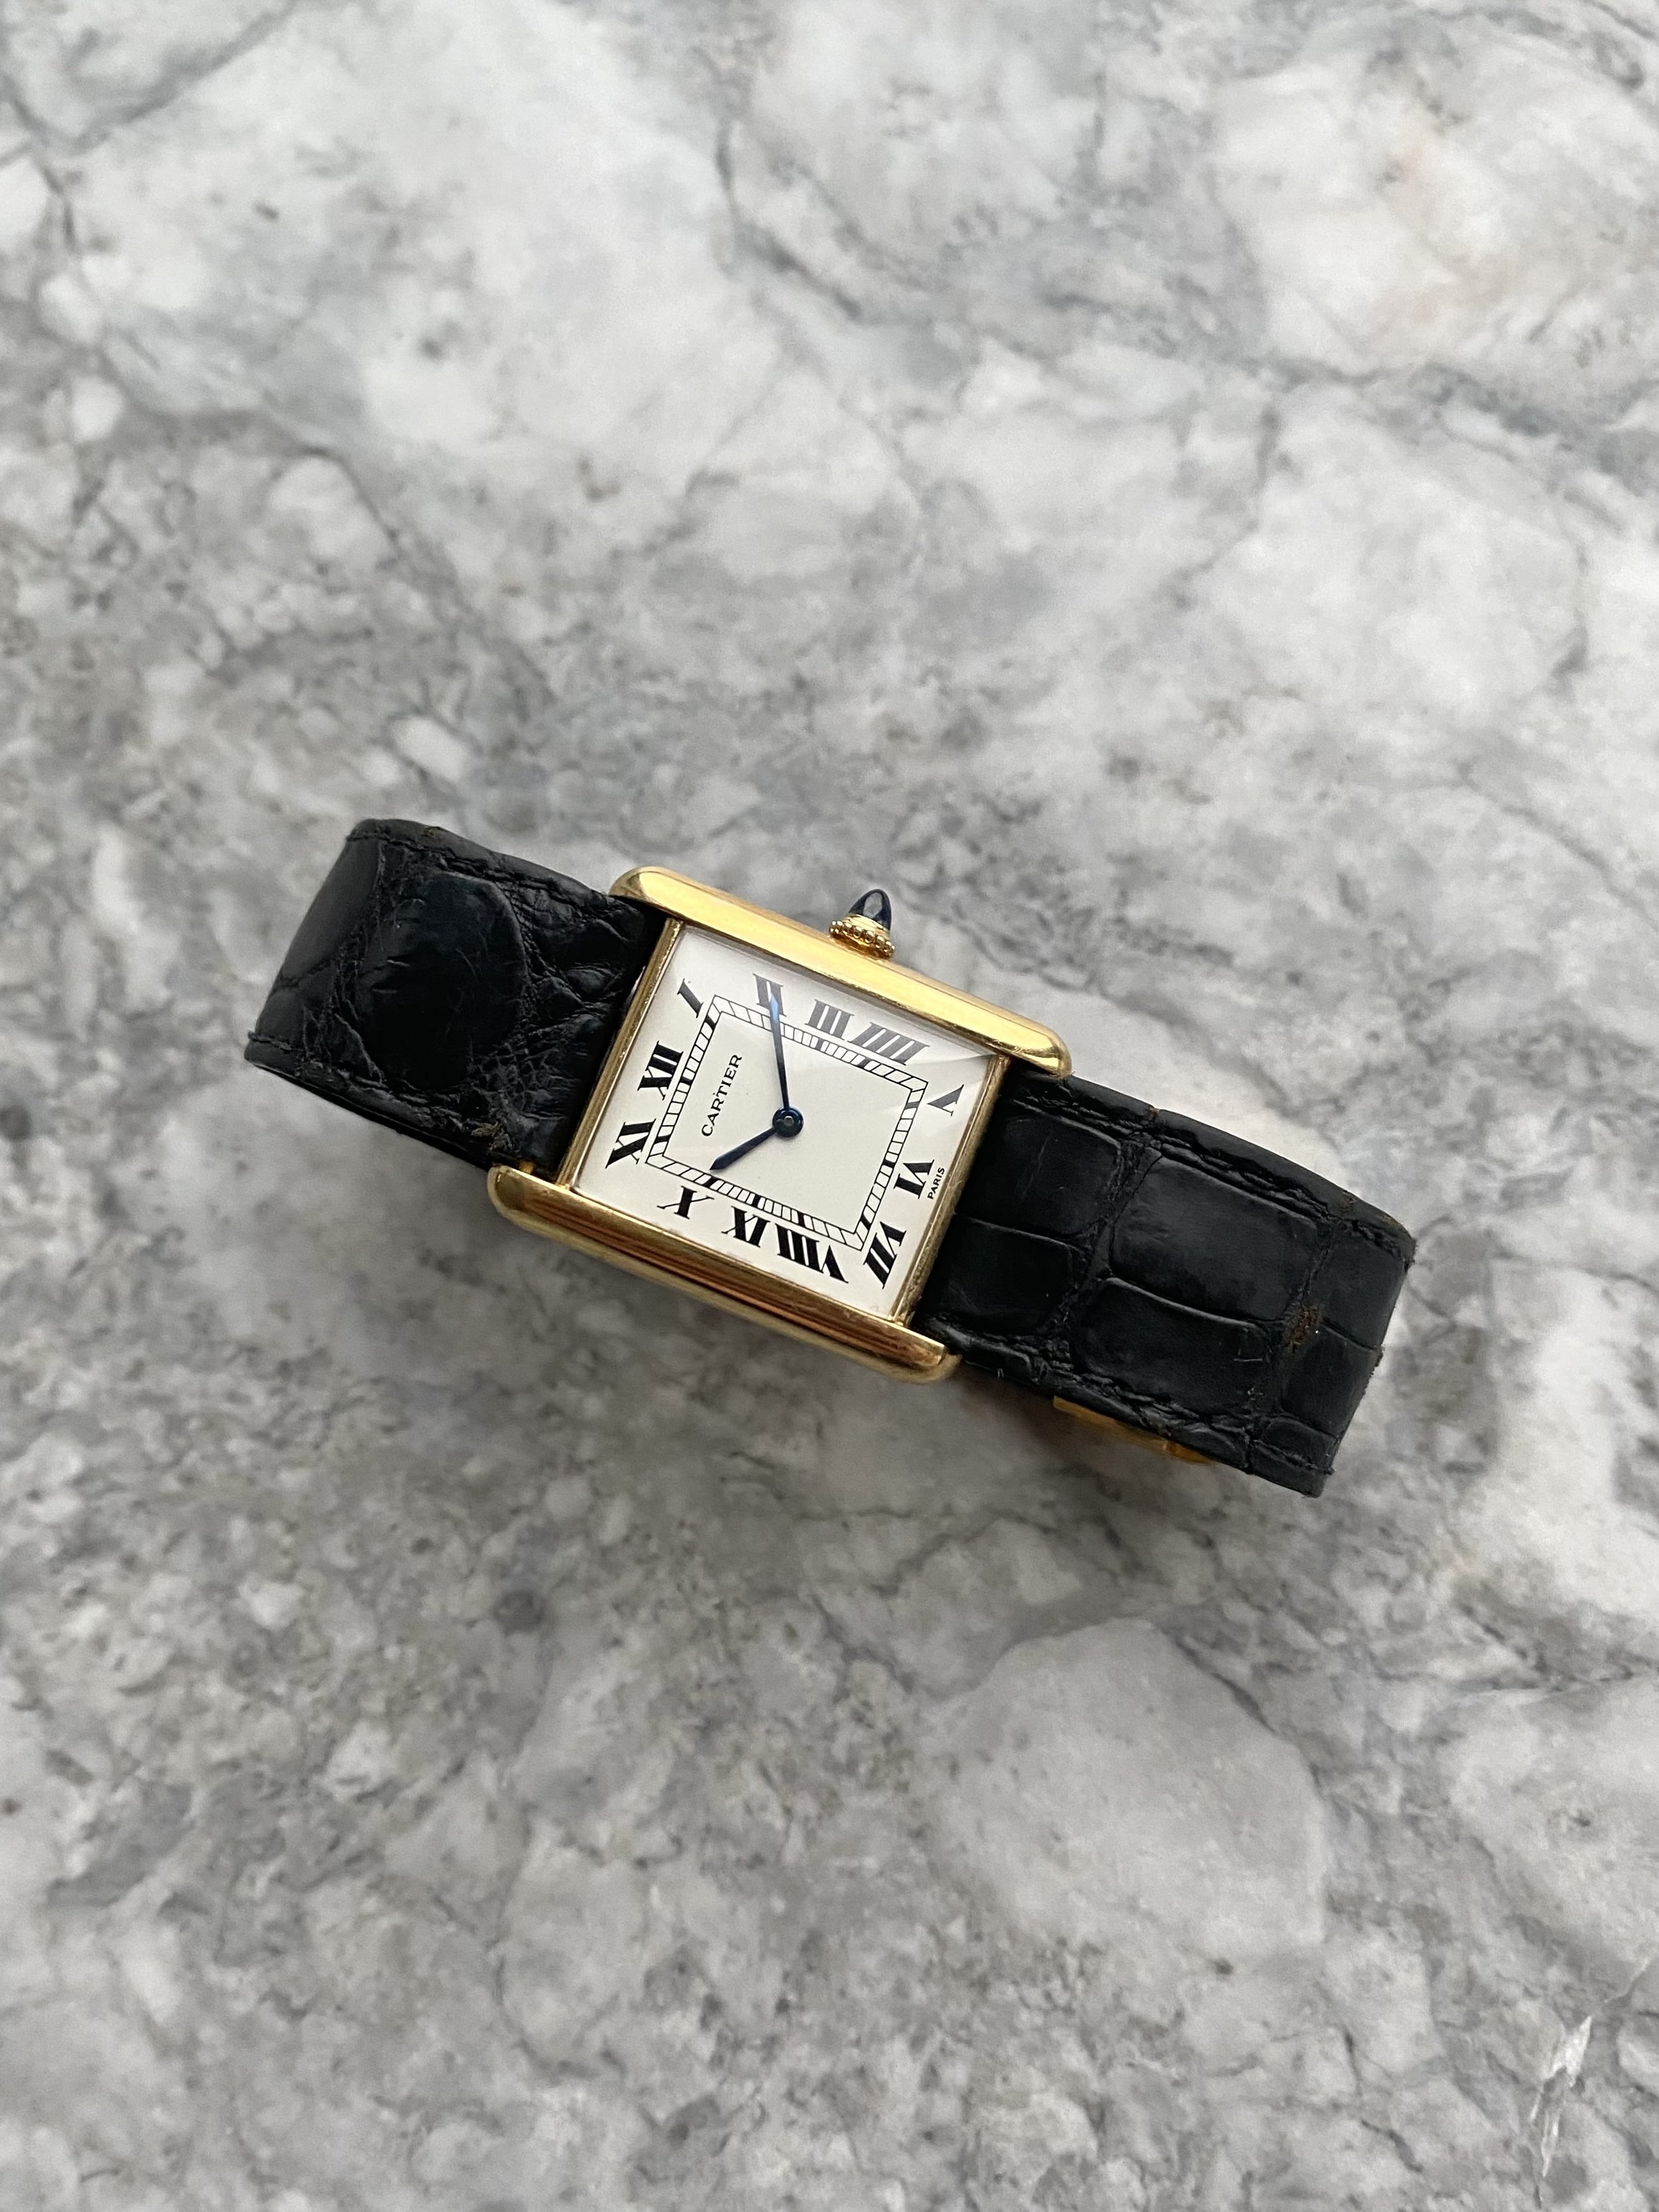 Cartier Tank Louis - 18K Gold “Paris” Dial. — Danny's Vintage Watches